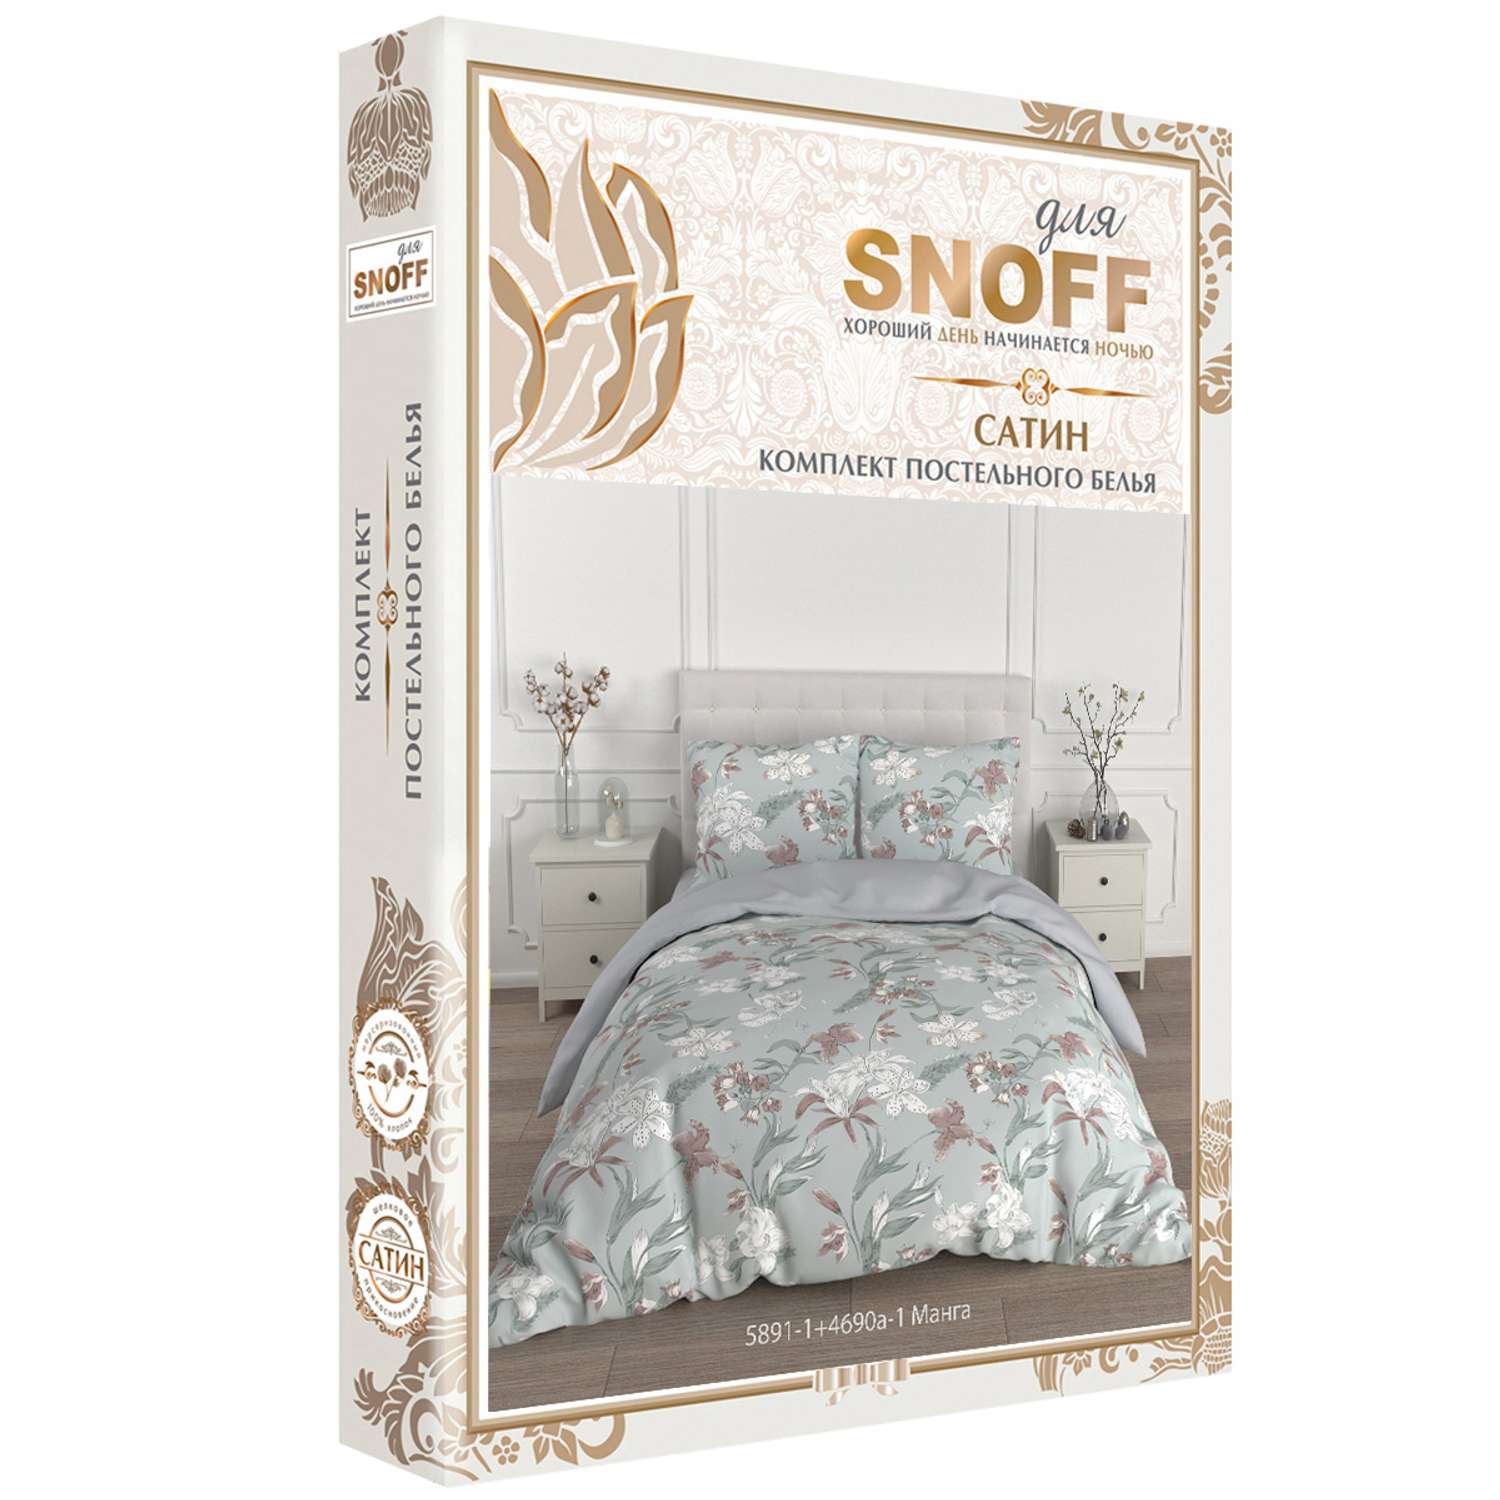 Комплект постельного белья для SNOFF Манга 2-спальный макси сатин - фото 7